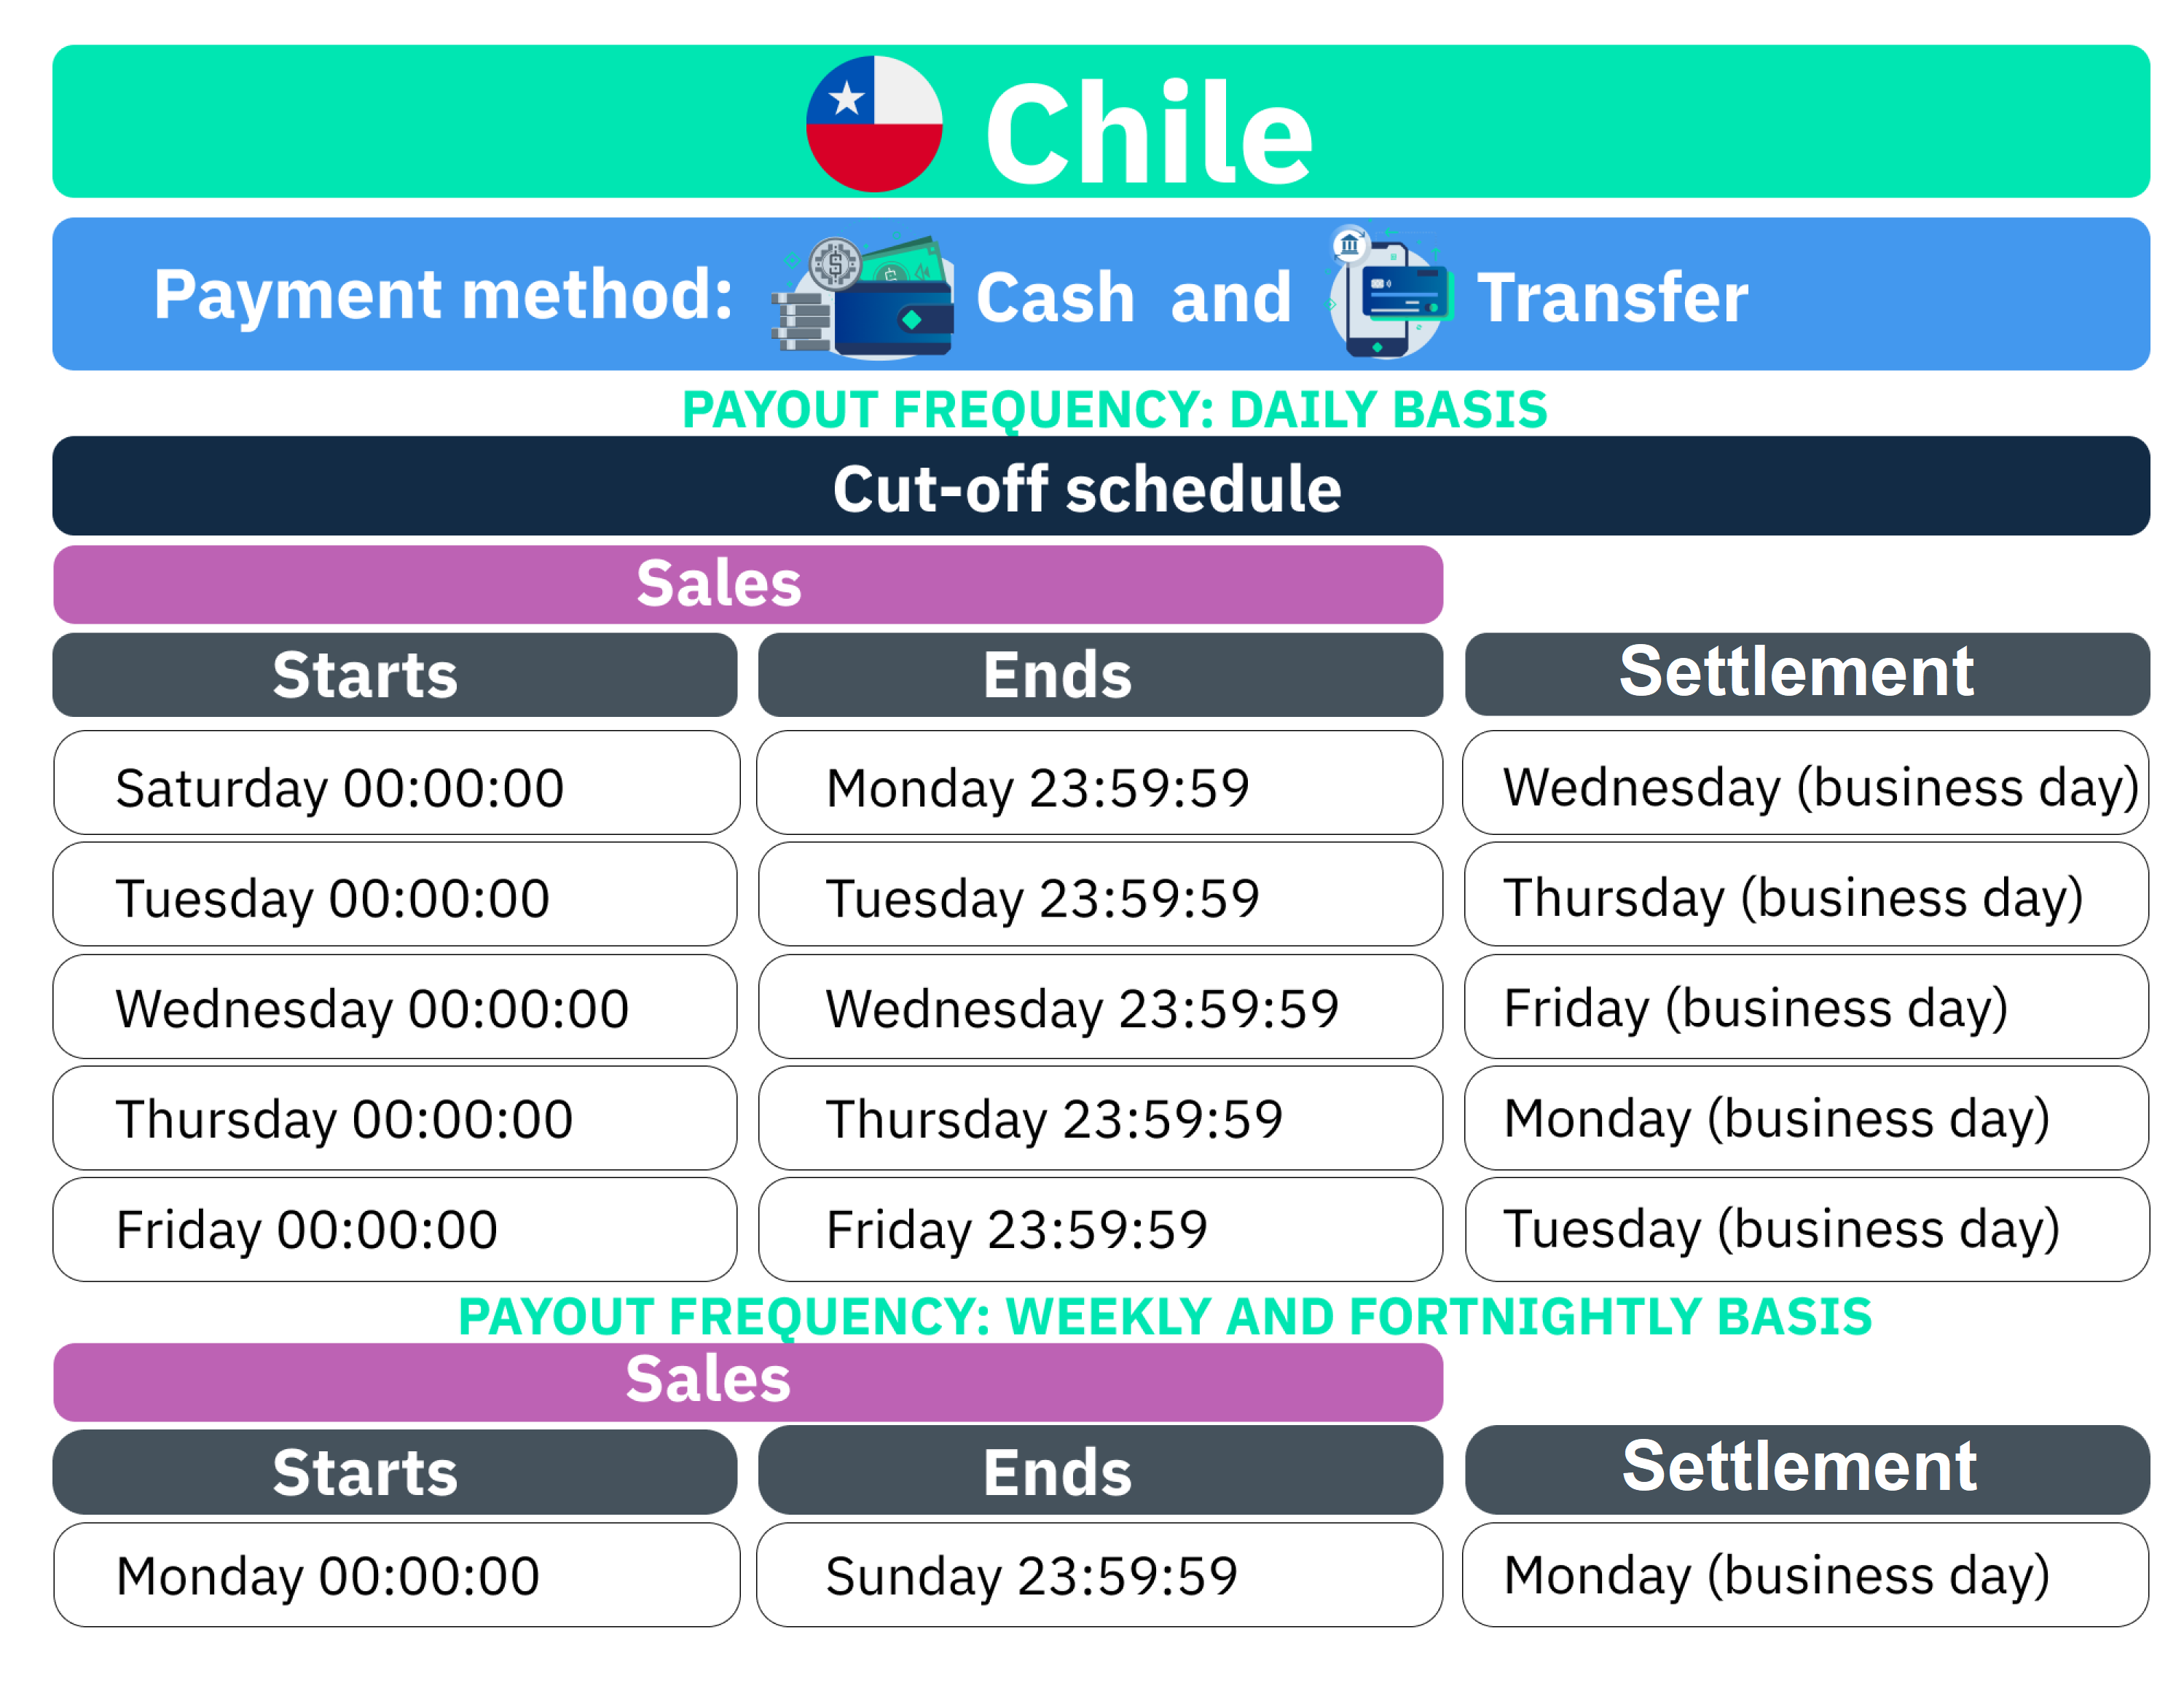 Traducción proceso de iquidación Chile - cash and transfer-final.png